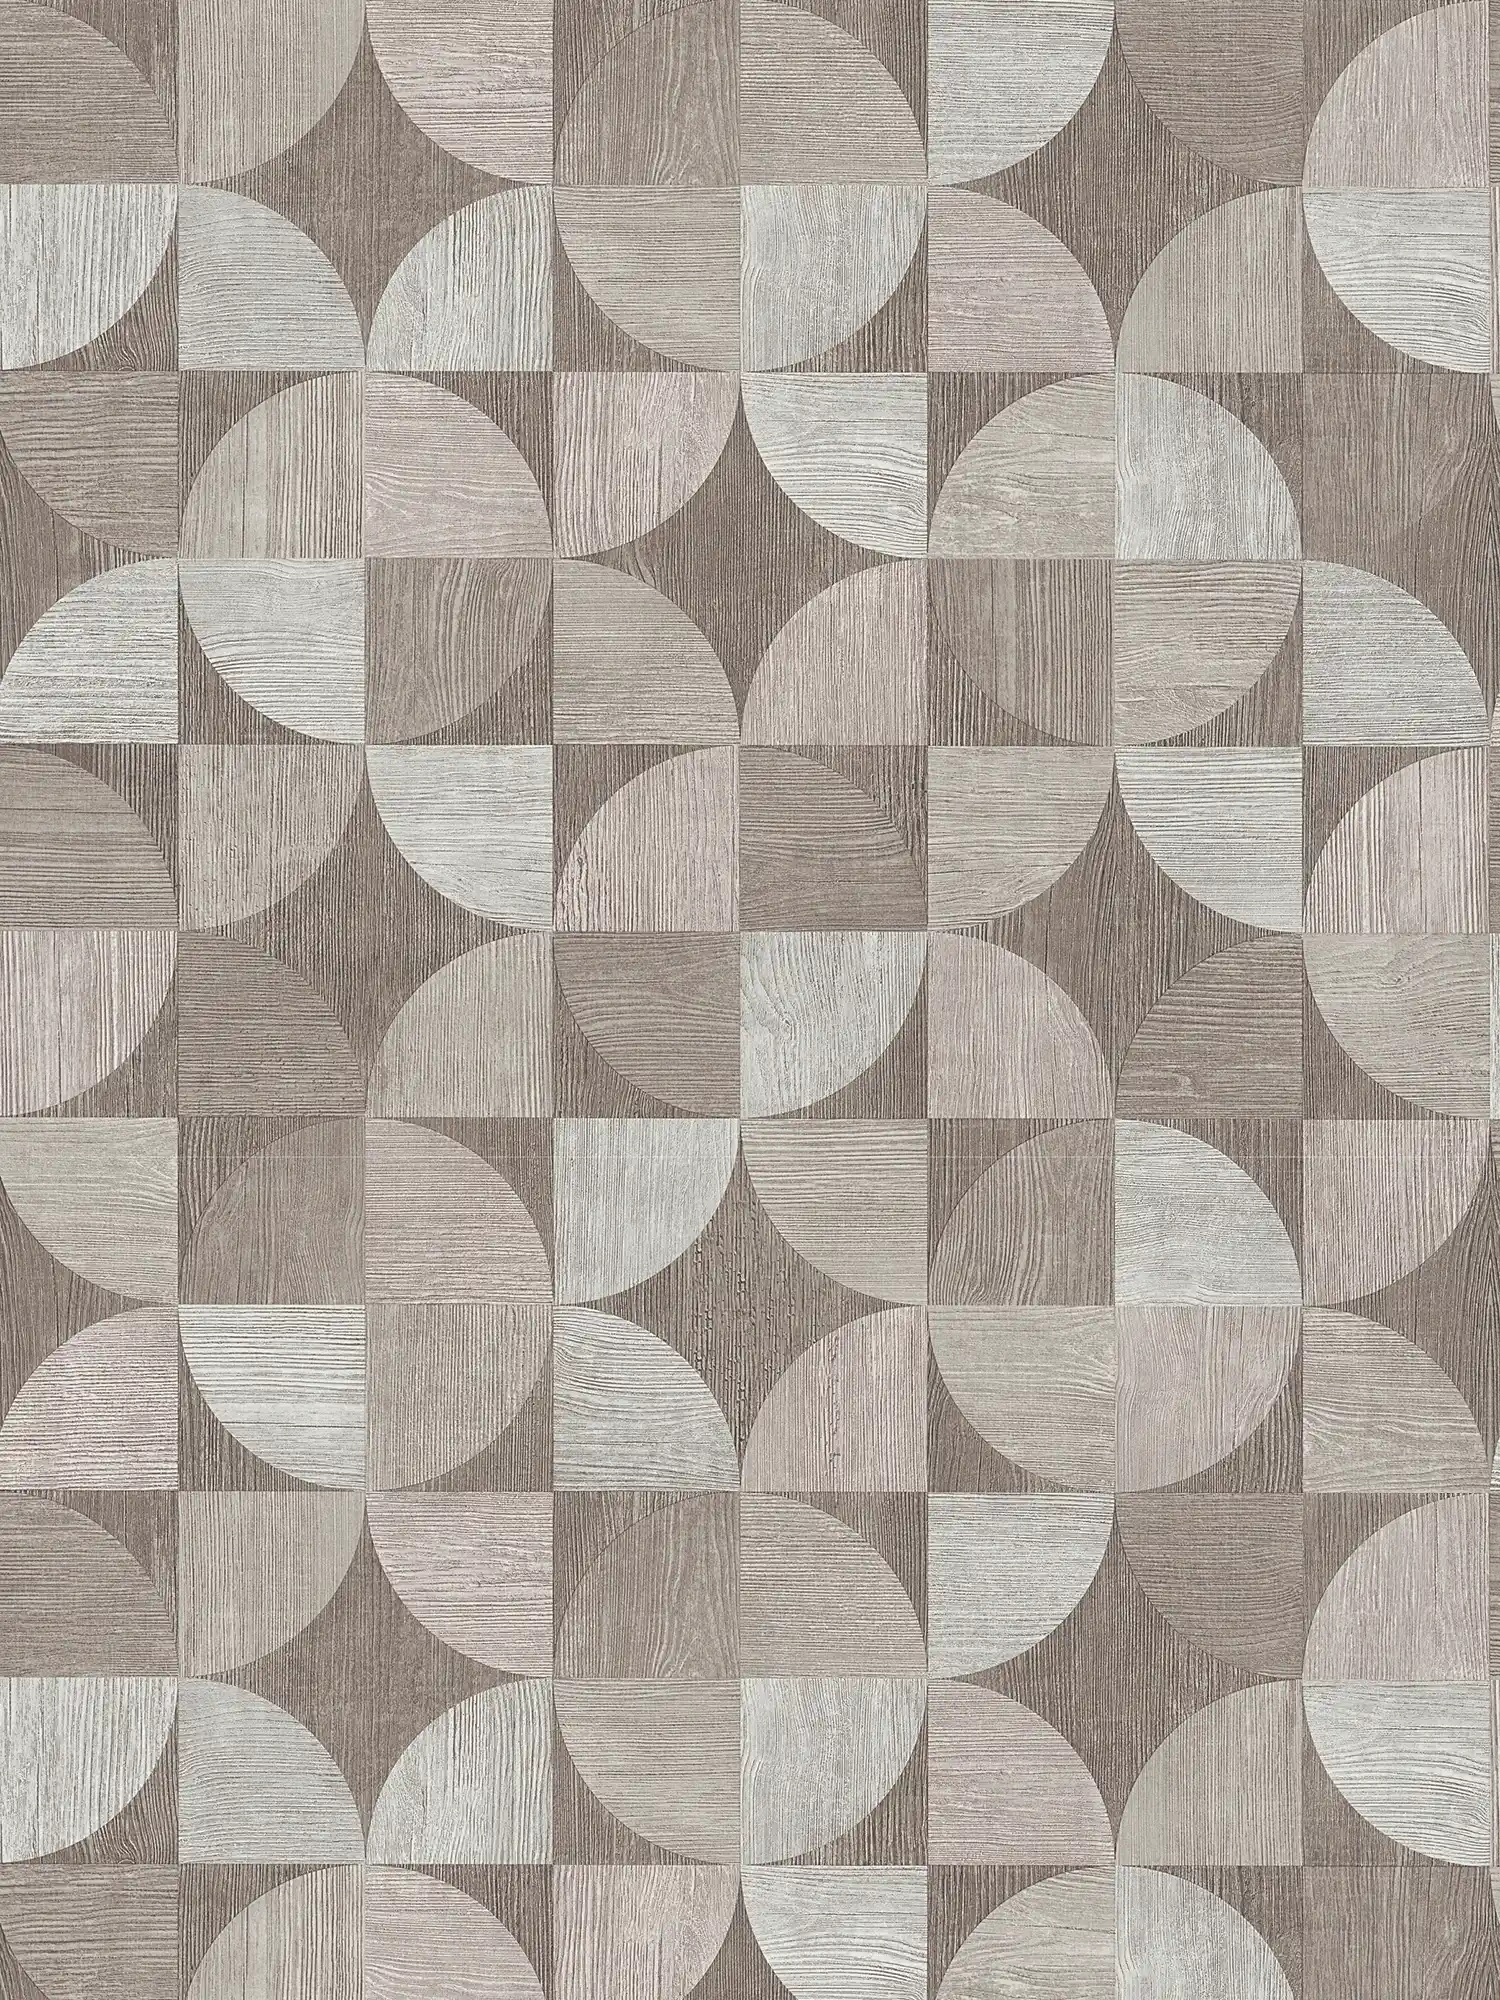         Tapete mit grafischem Muster in Holzoptik – Grau
    